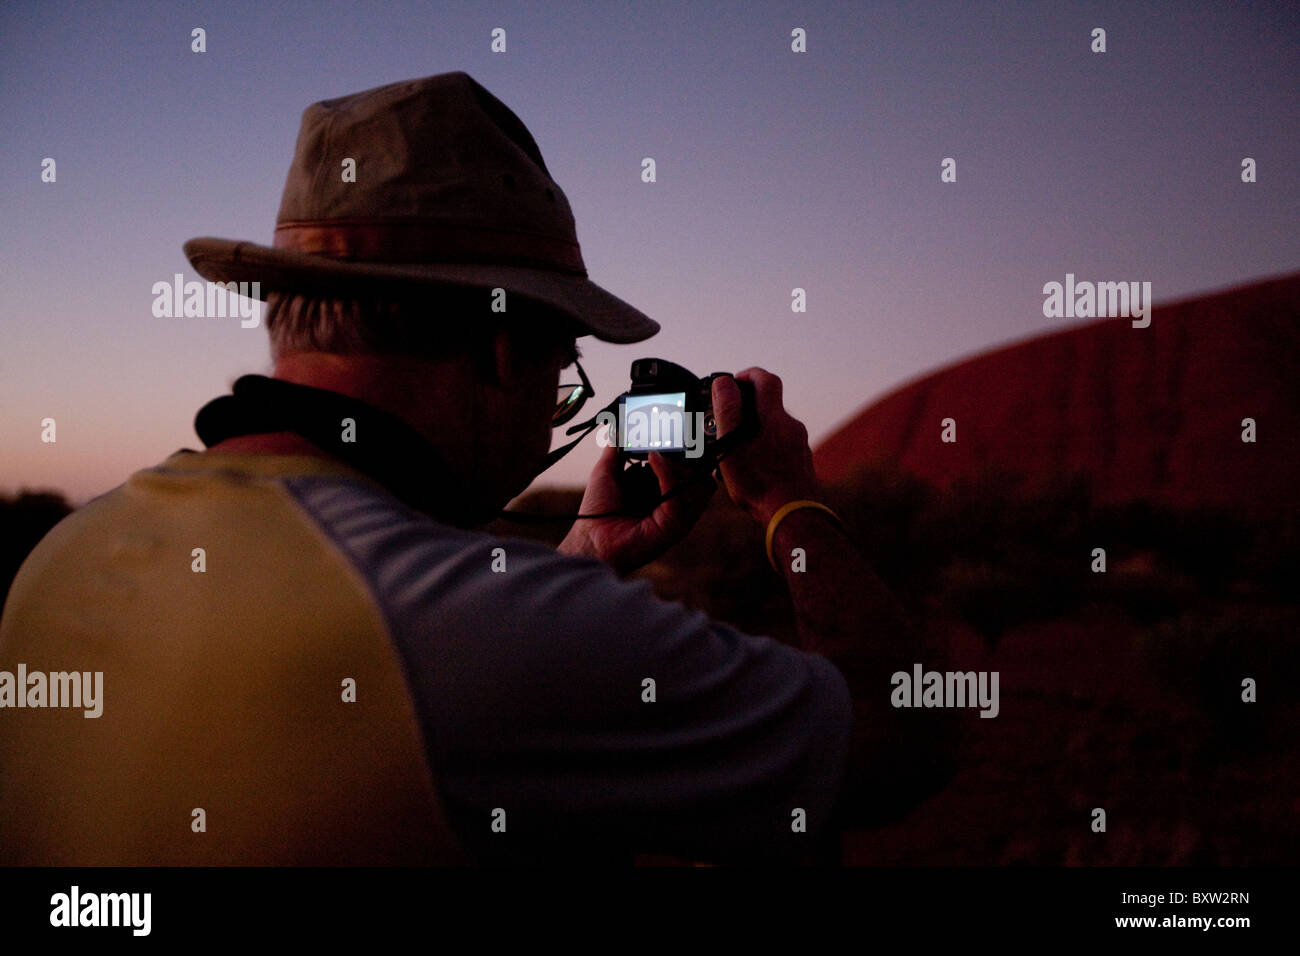 Australien, Northern Territory, Uluru - Kata Tjuta National Park, Tourist fotografiert Ayers Rock vor der Morgendämmerung am Sommermorgen Stockfoto